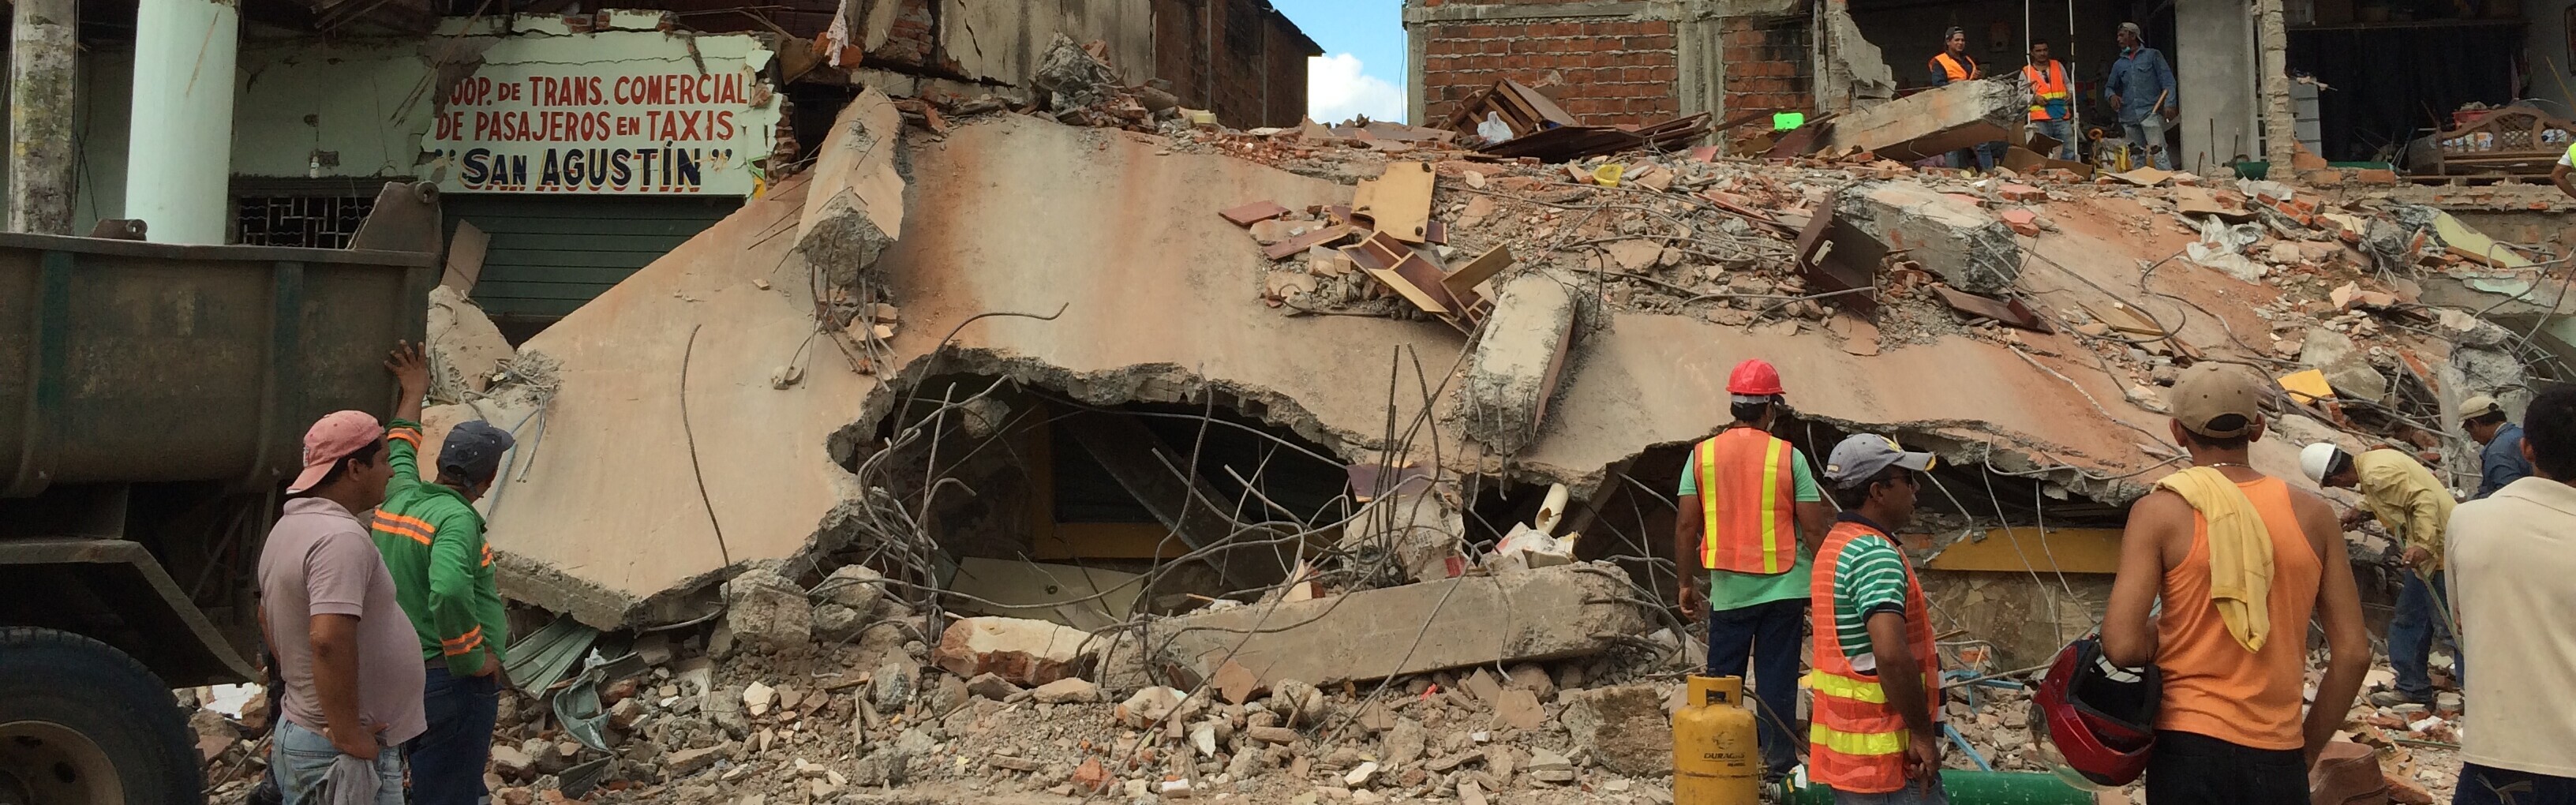 Nach dem Erdbeben in Ecuador läuft die Hilfe an. Bergungsteams stehen vor einem der zahlreichen eingestürzten Gebäude.